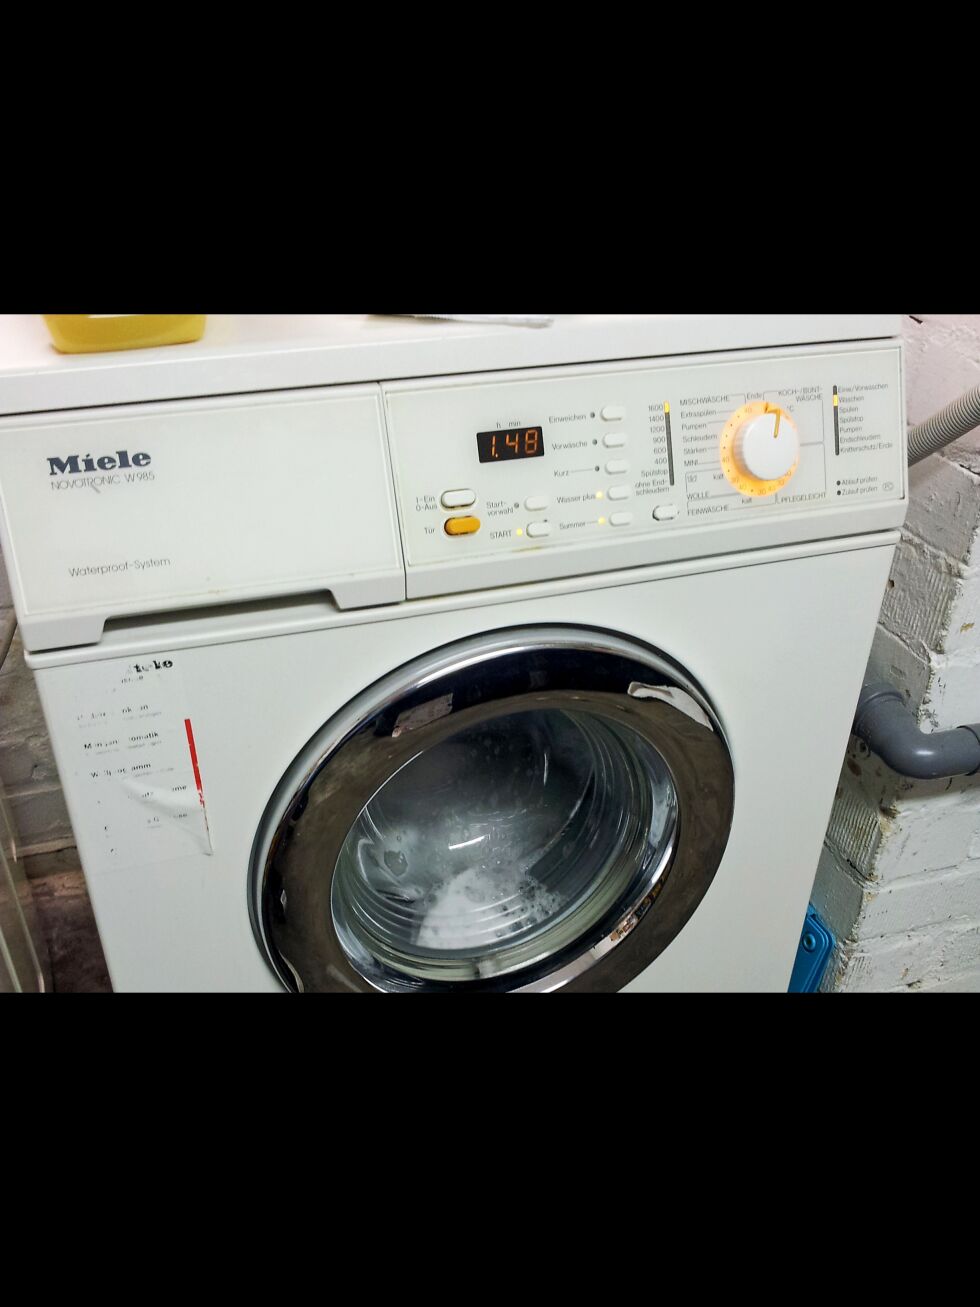 Det kan være svært farlig å bruke vaskemaskinen om natten når alle sover, eller hvis man ikke selv er hjemme.
 Foto: Wikimedia Commons